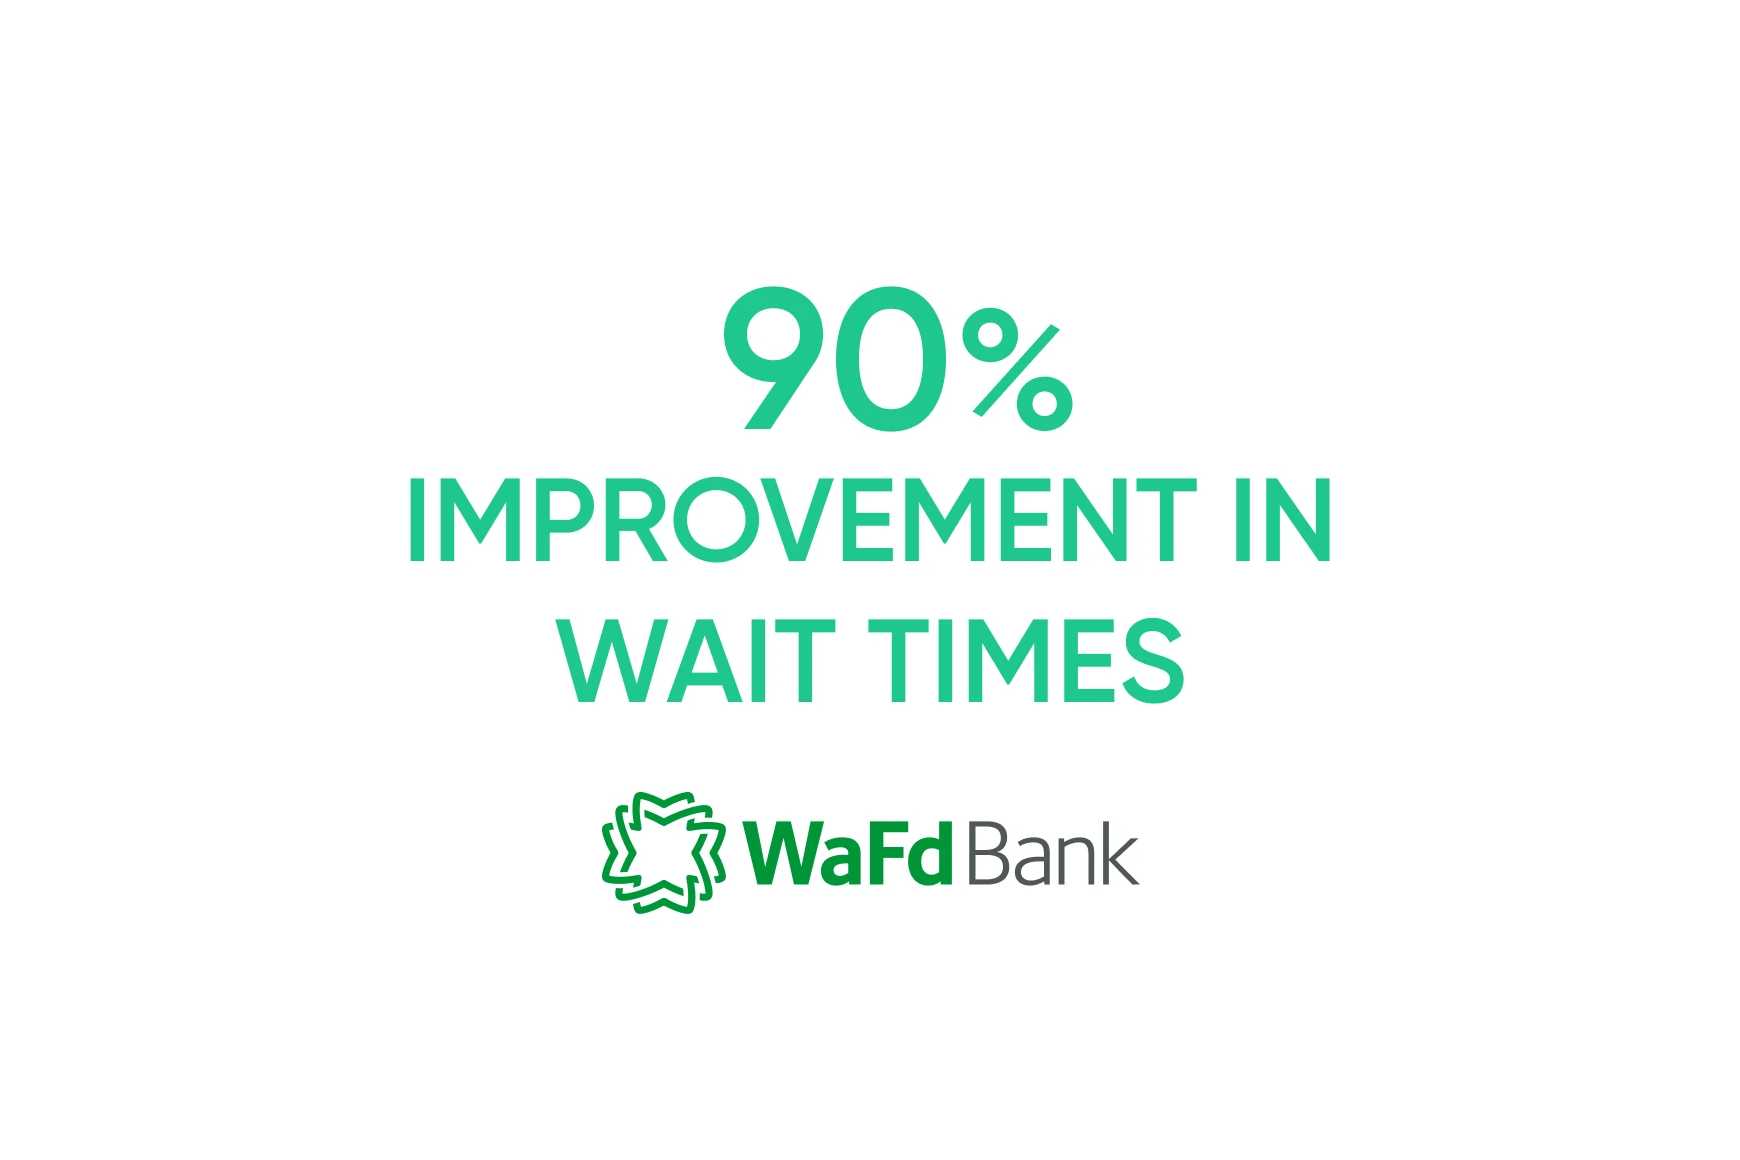 Banco WaFD: tempo de atendimento reduzido usando biometria de voz para autenticação